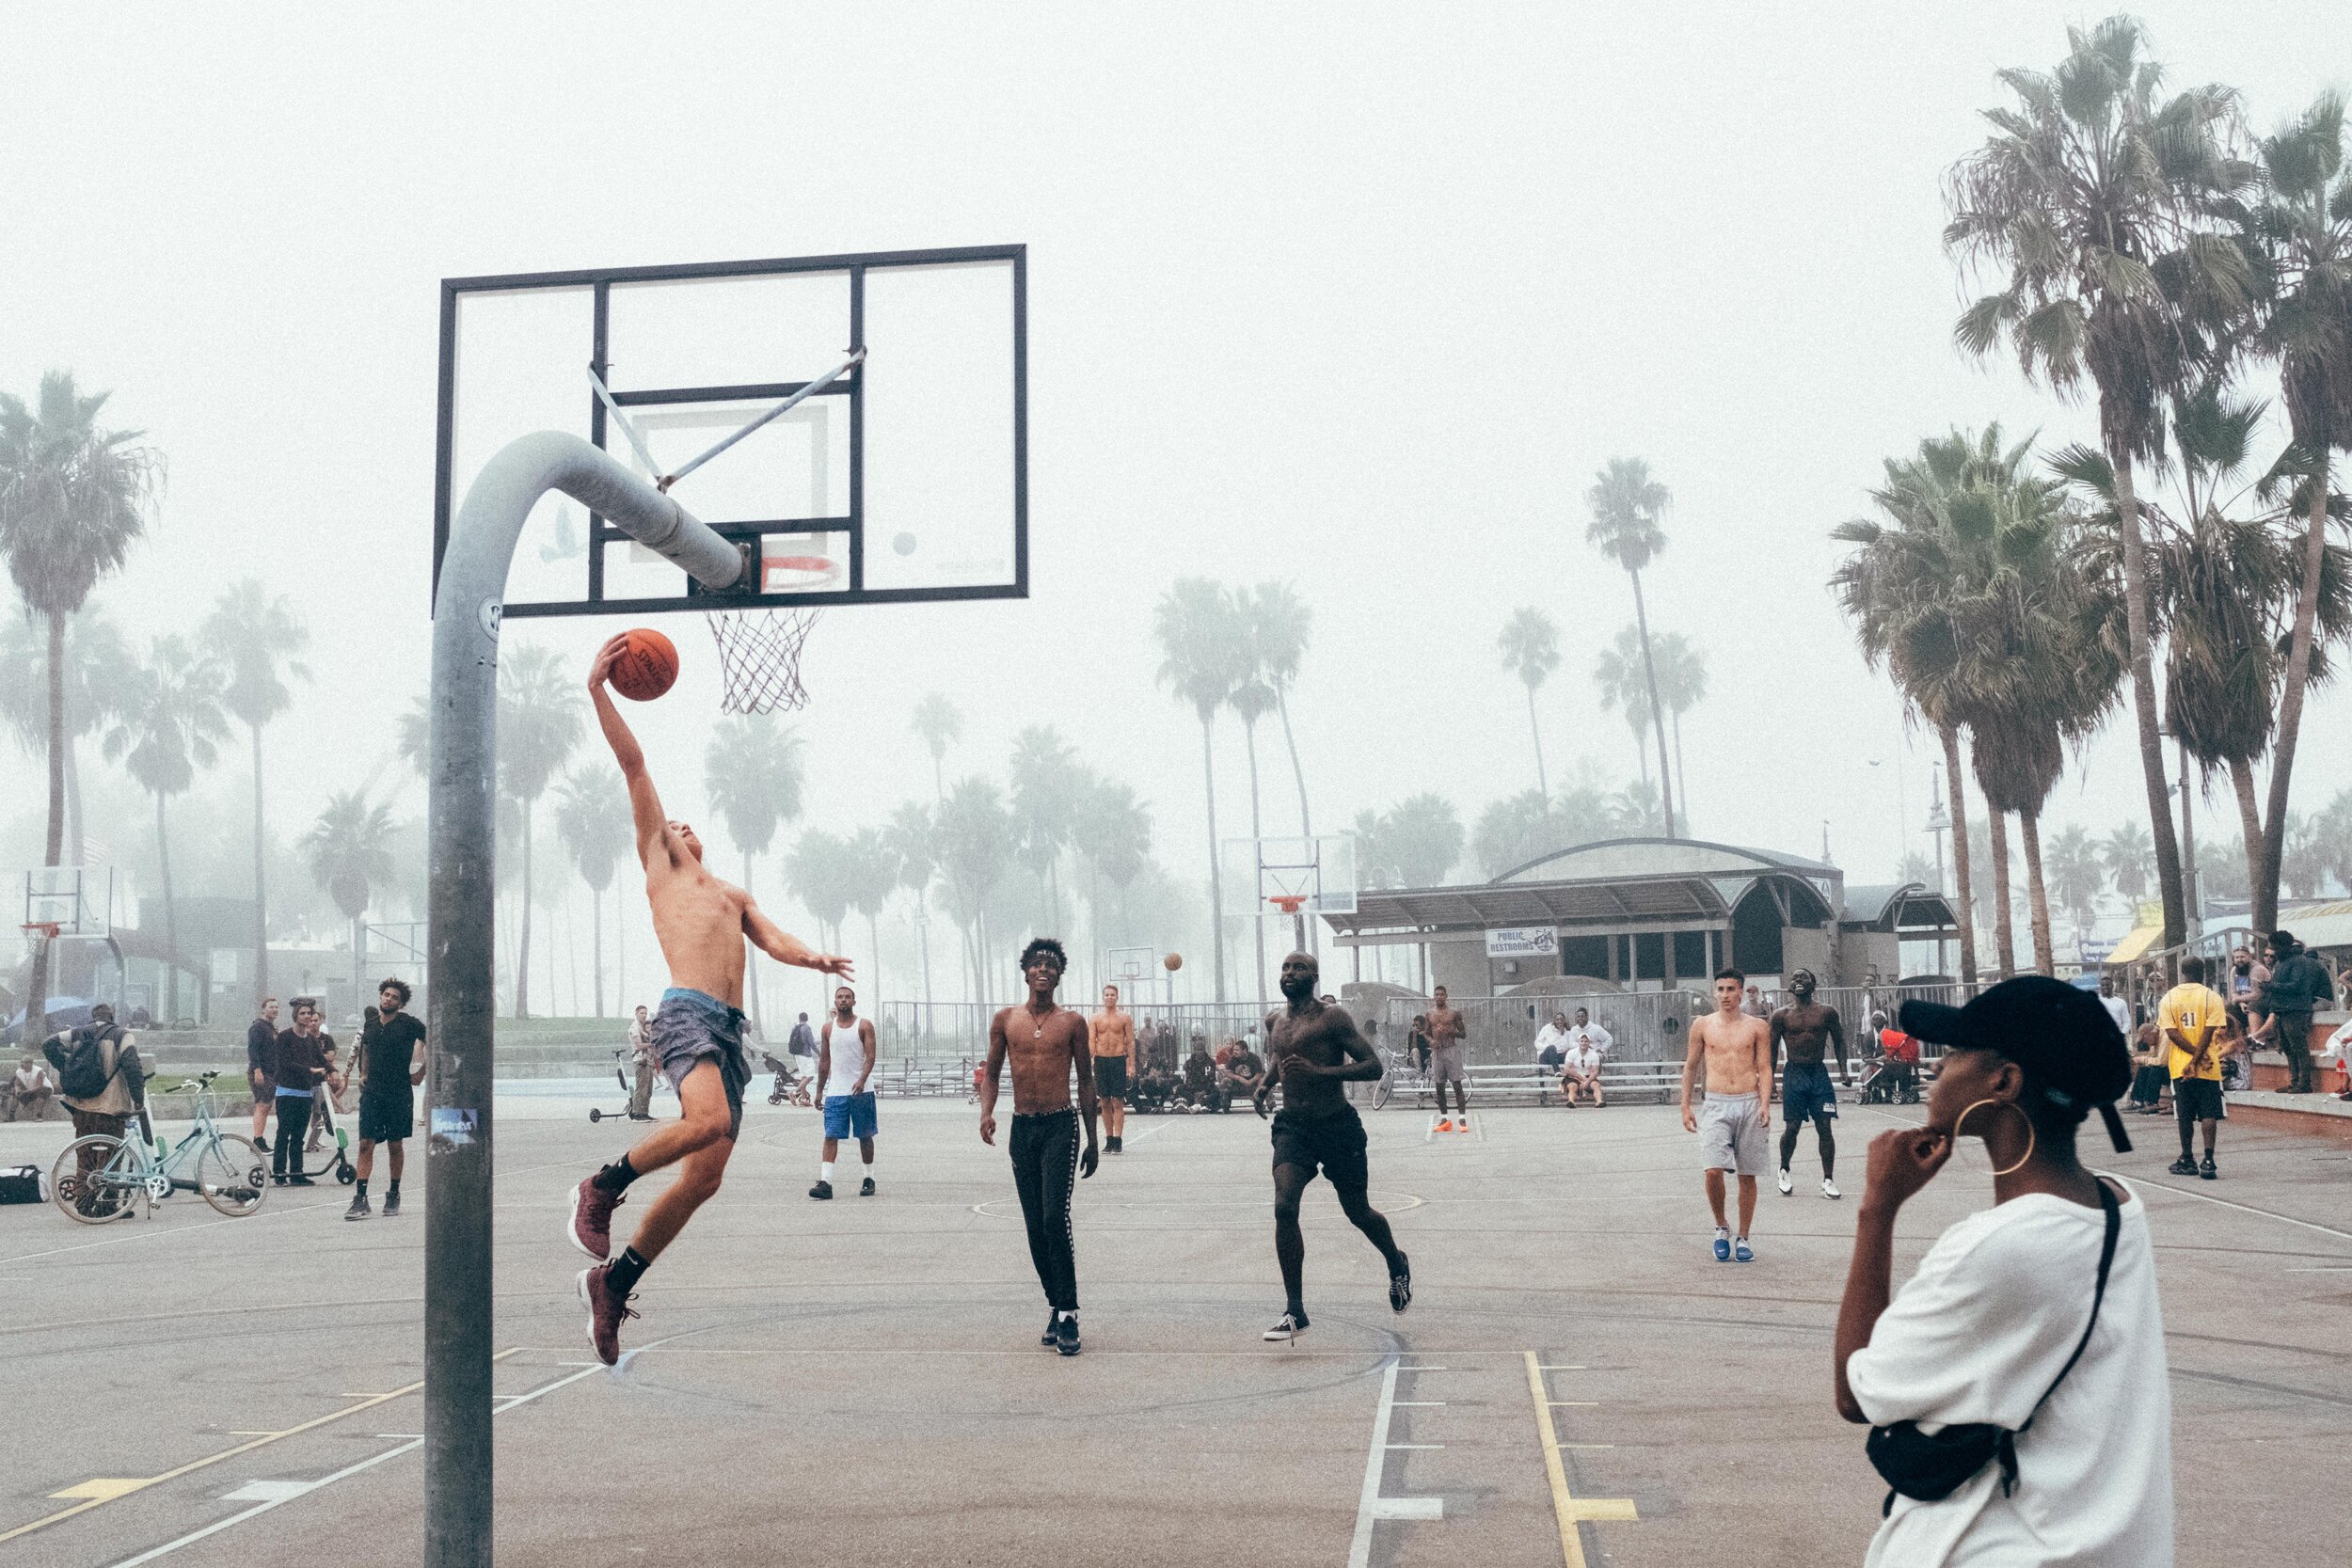 Chơi bóng rổ đường phố có rất nhiều điểm thú vị và khác biệt hơn so với bóng rổ chuyên nghiệp